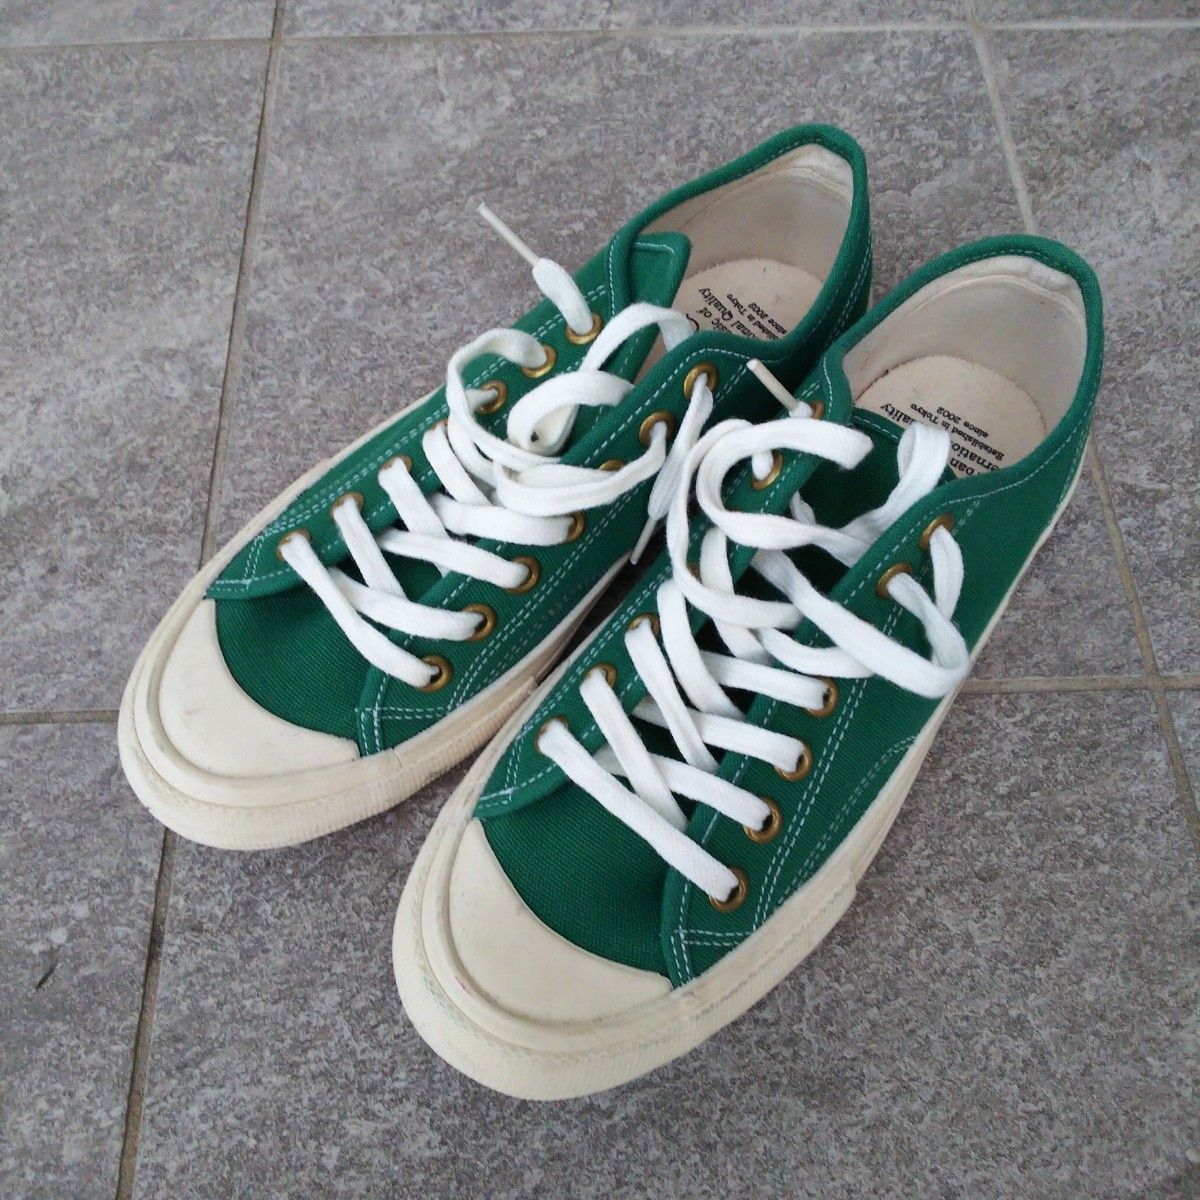 スニーカー 26cm UBIQ ユービック キャンバス 緑 グリーン 靴 メンズ